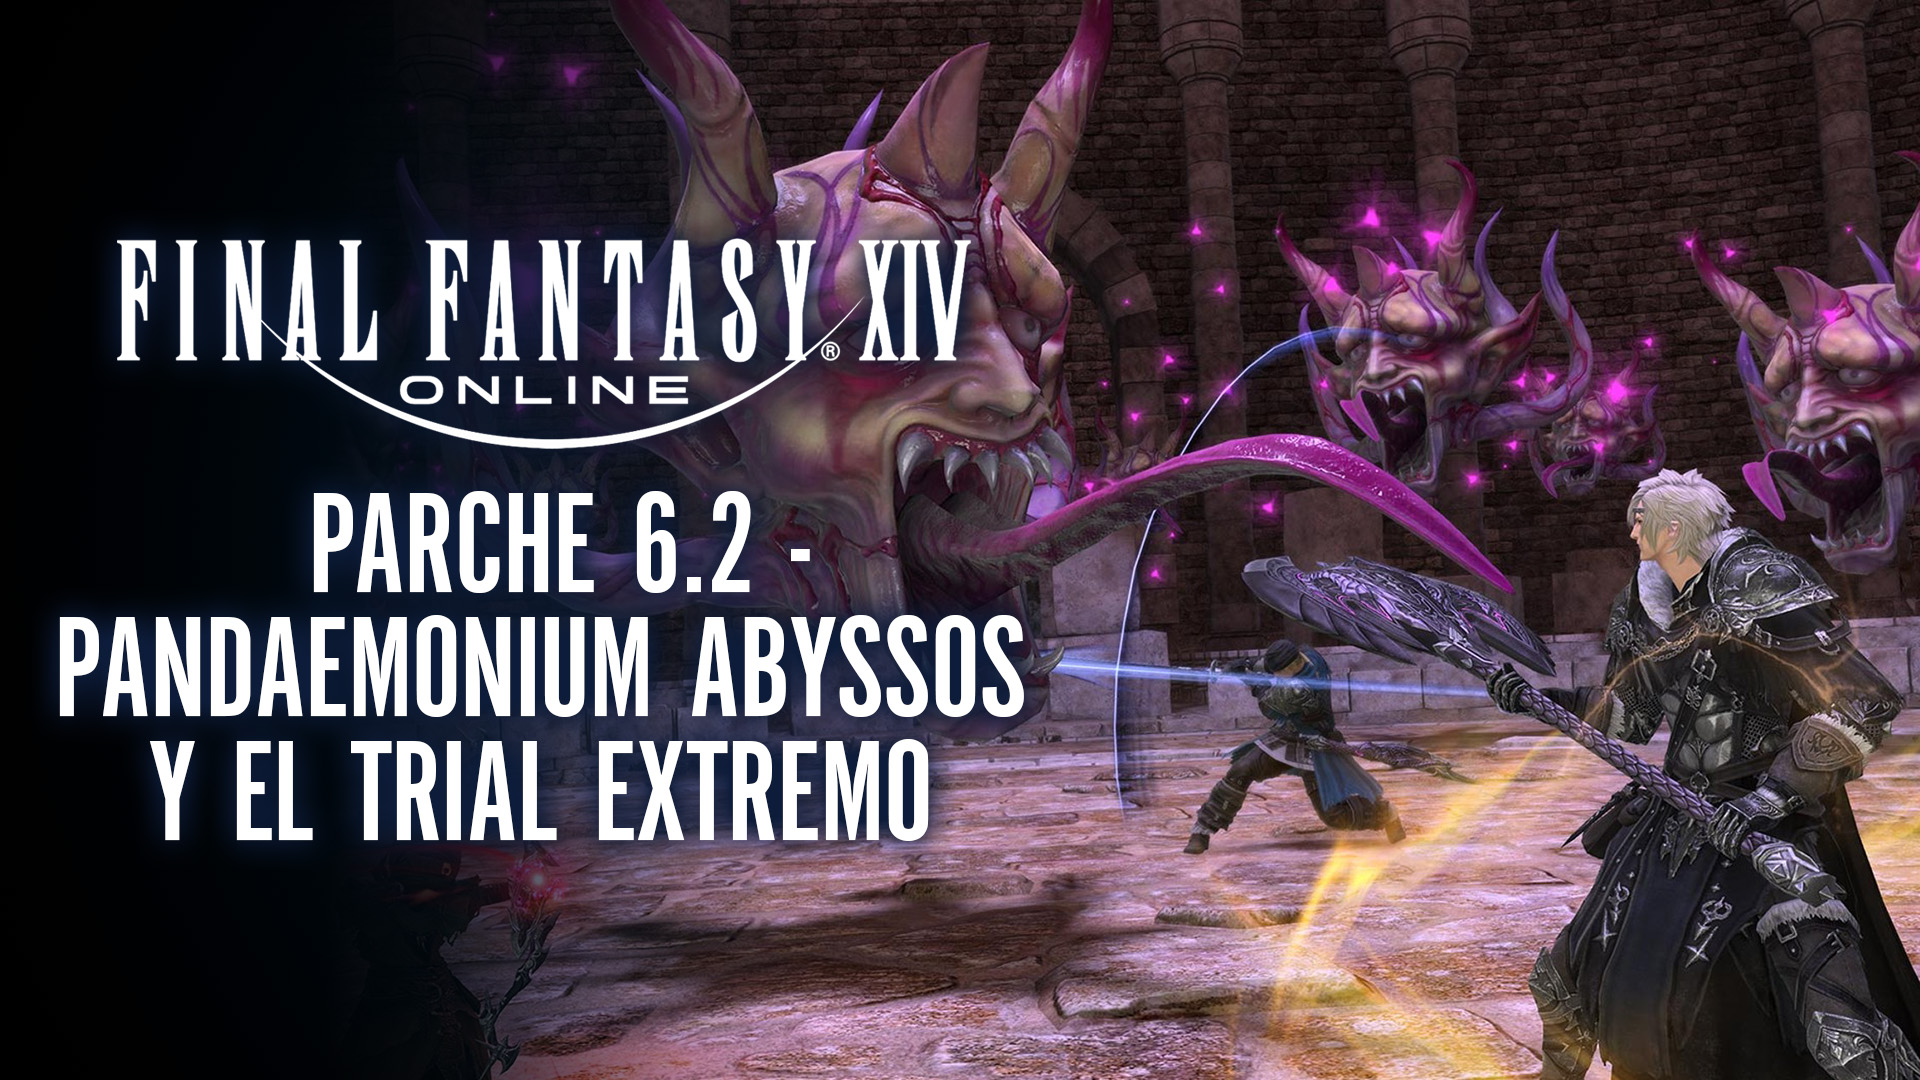 Stream Final Fantasy XIV – Pandaemonium Abyssos y el Trial Extremo